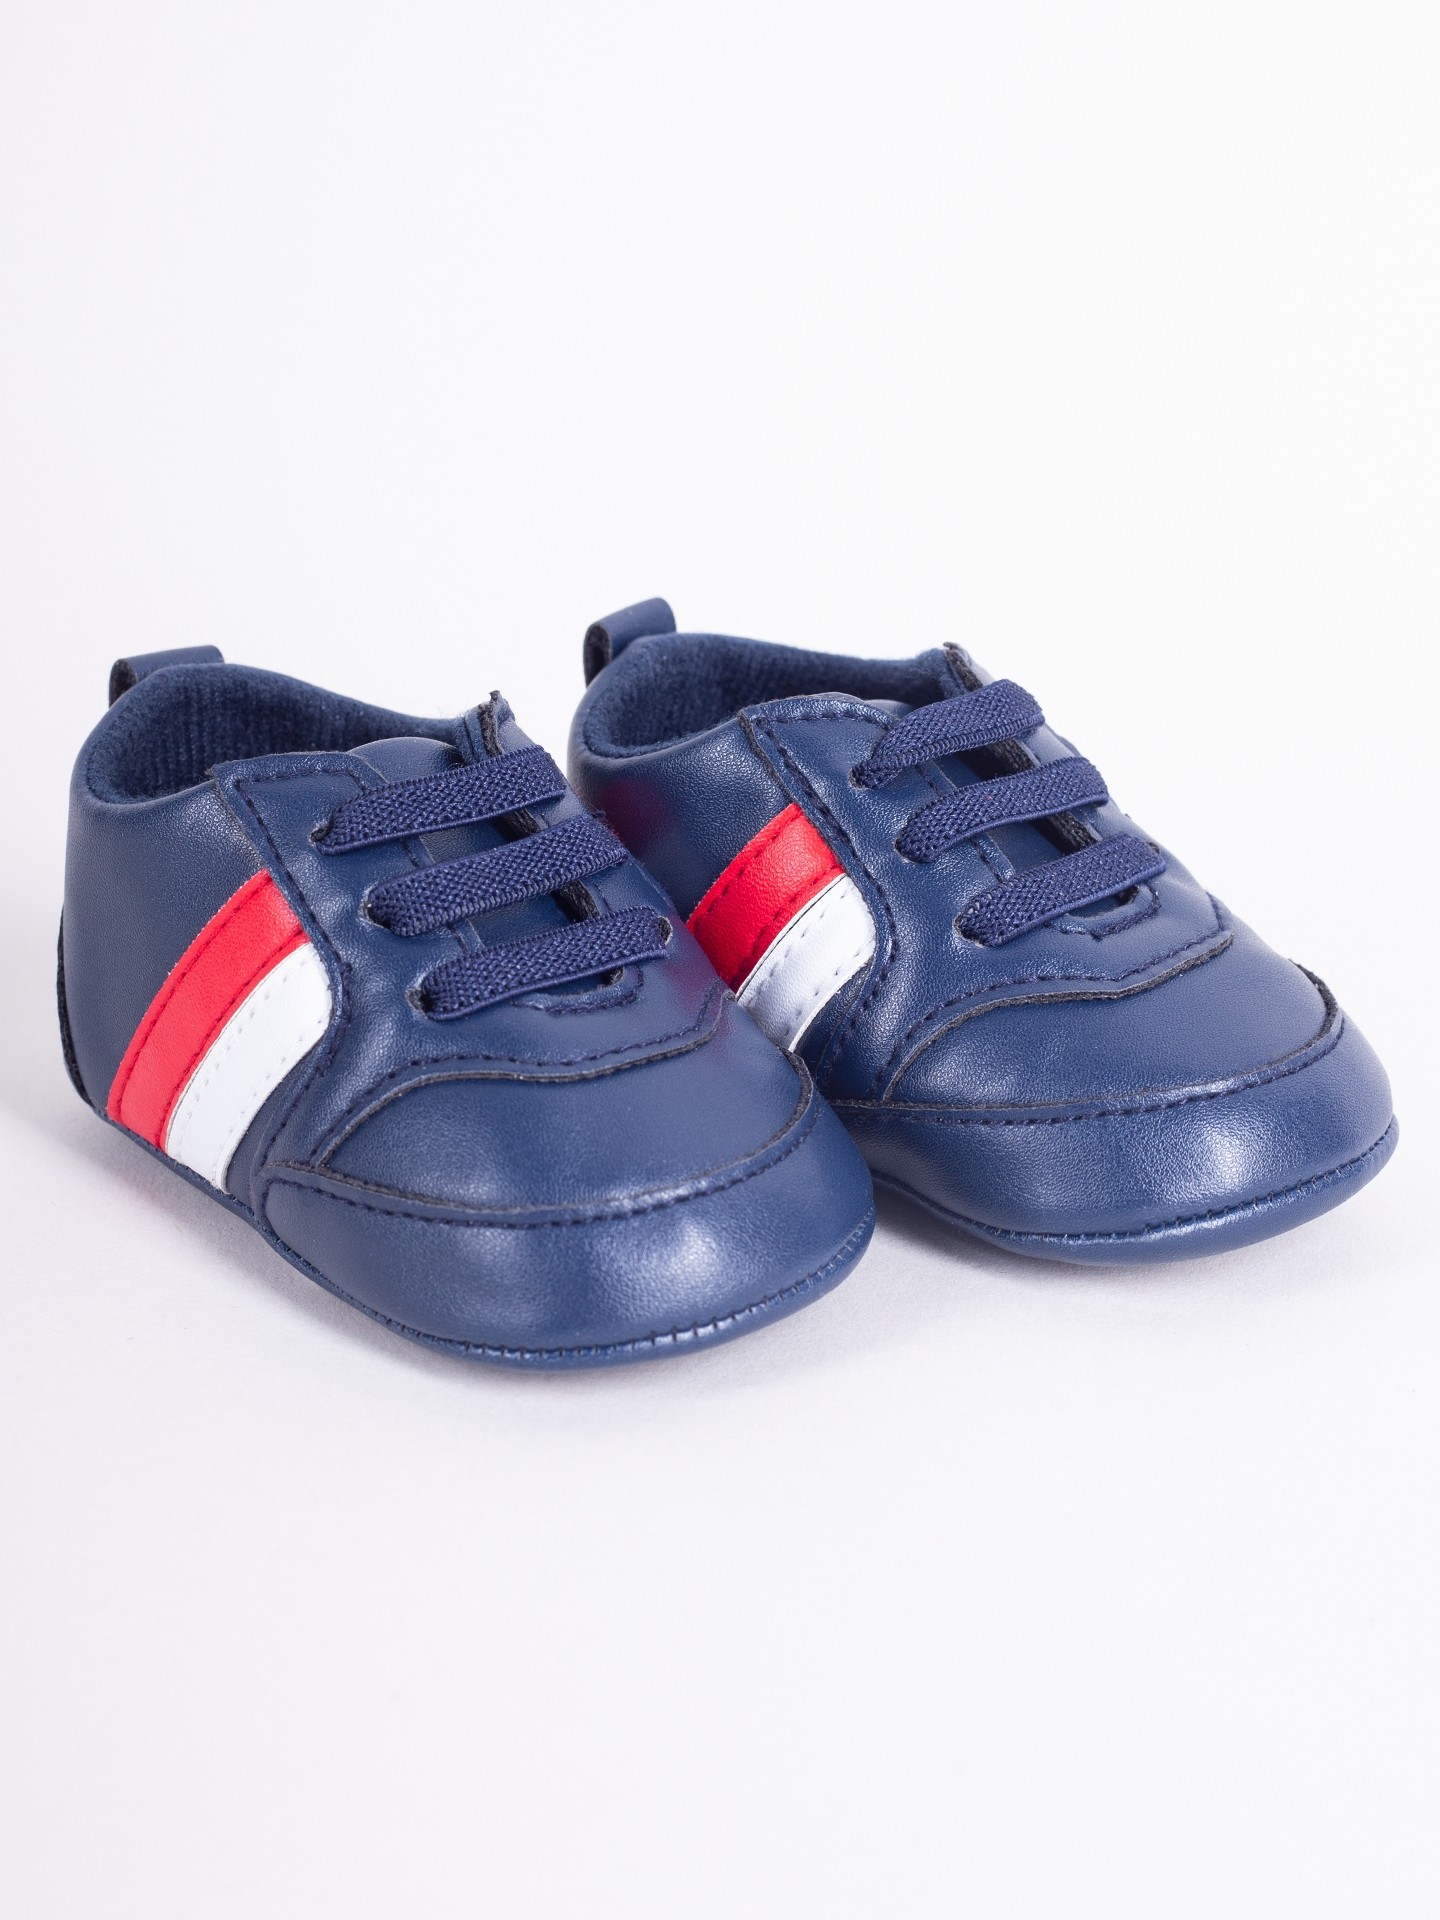 Levně Yoclub Kids's Baby Boy's Shoes OBO-0207C-6100 Navy Blue